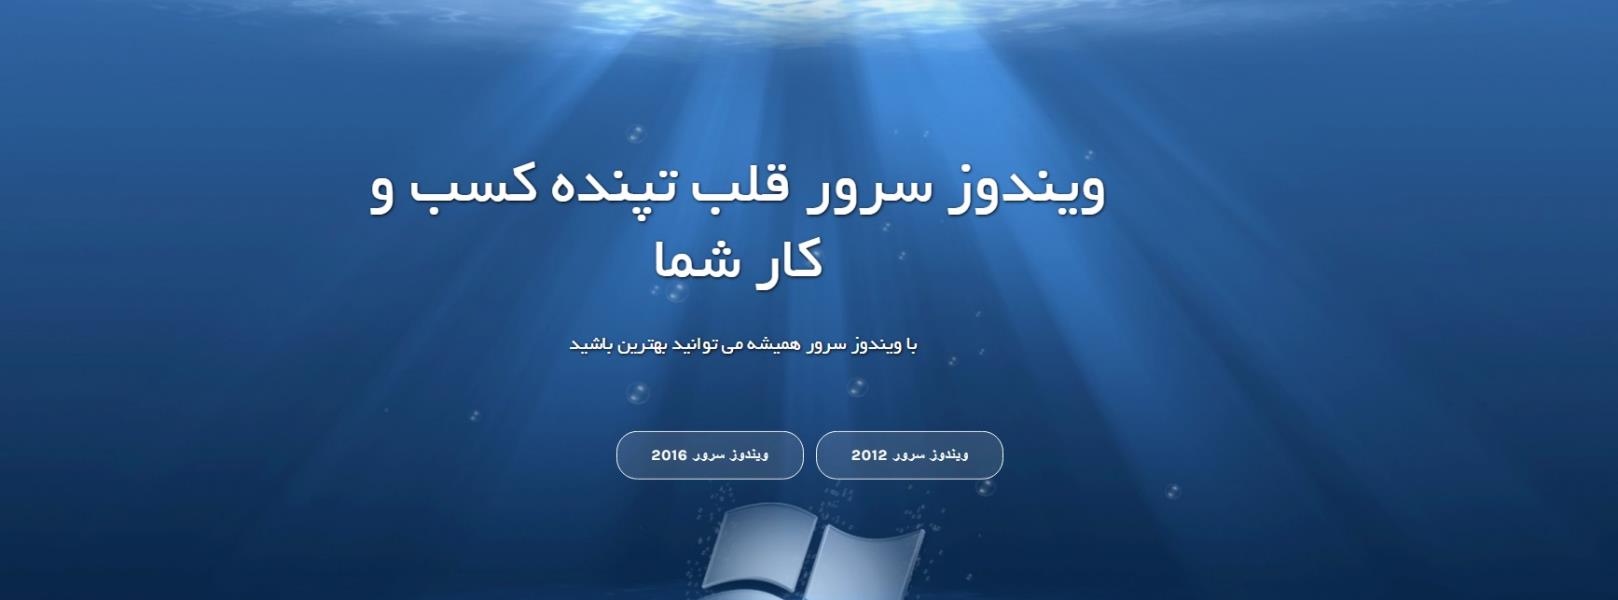 تحویل آنی محصولات مایکروسافت در ایران، همکار رسمی مایکروسافت